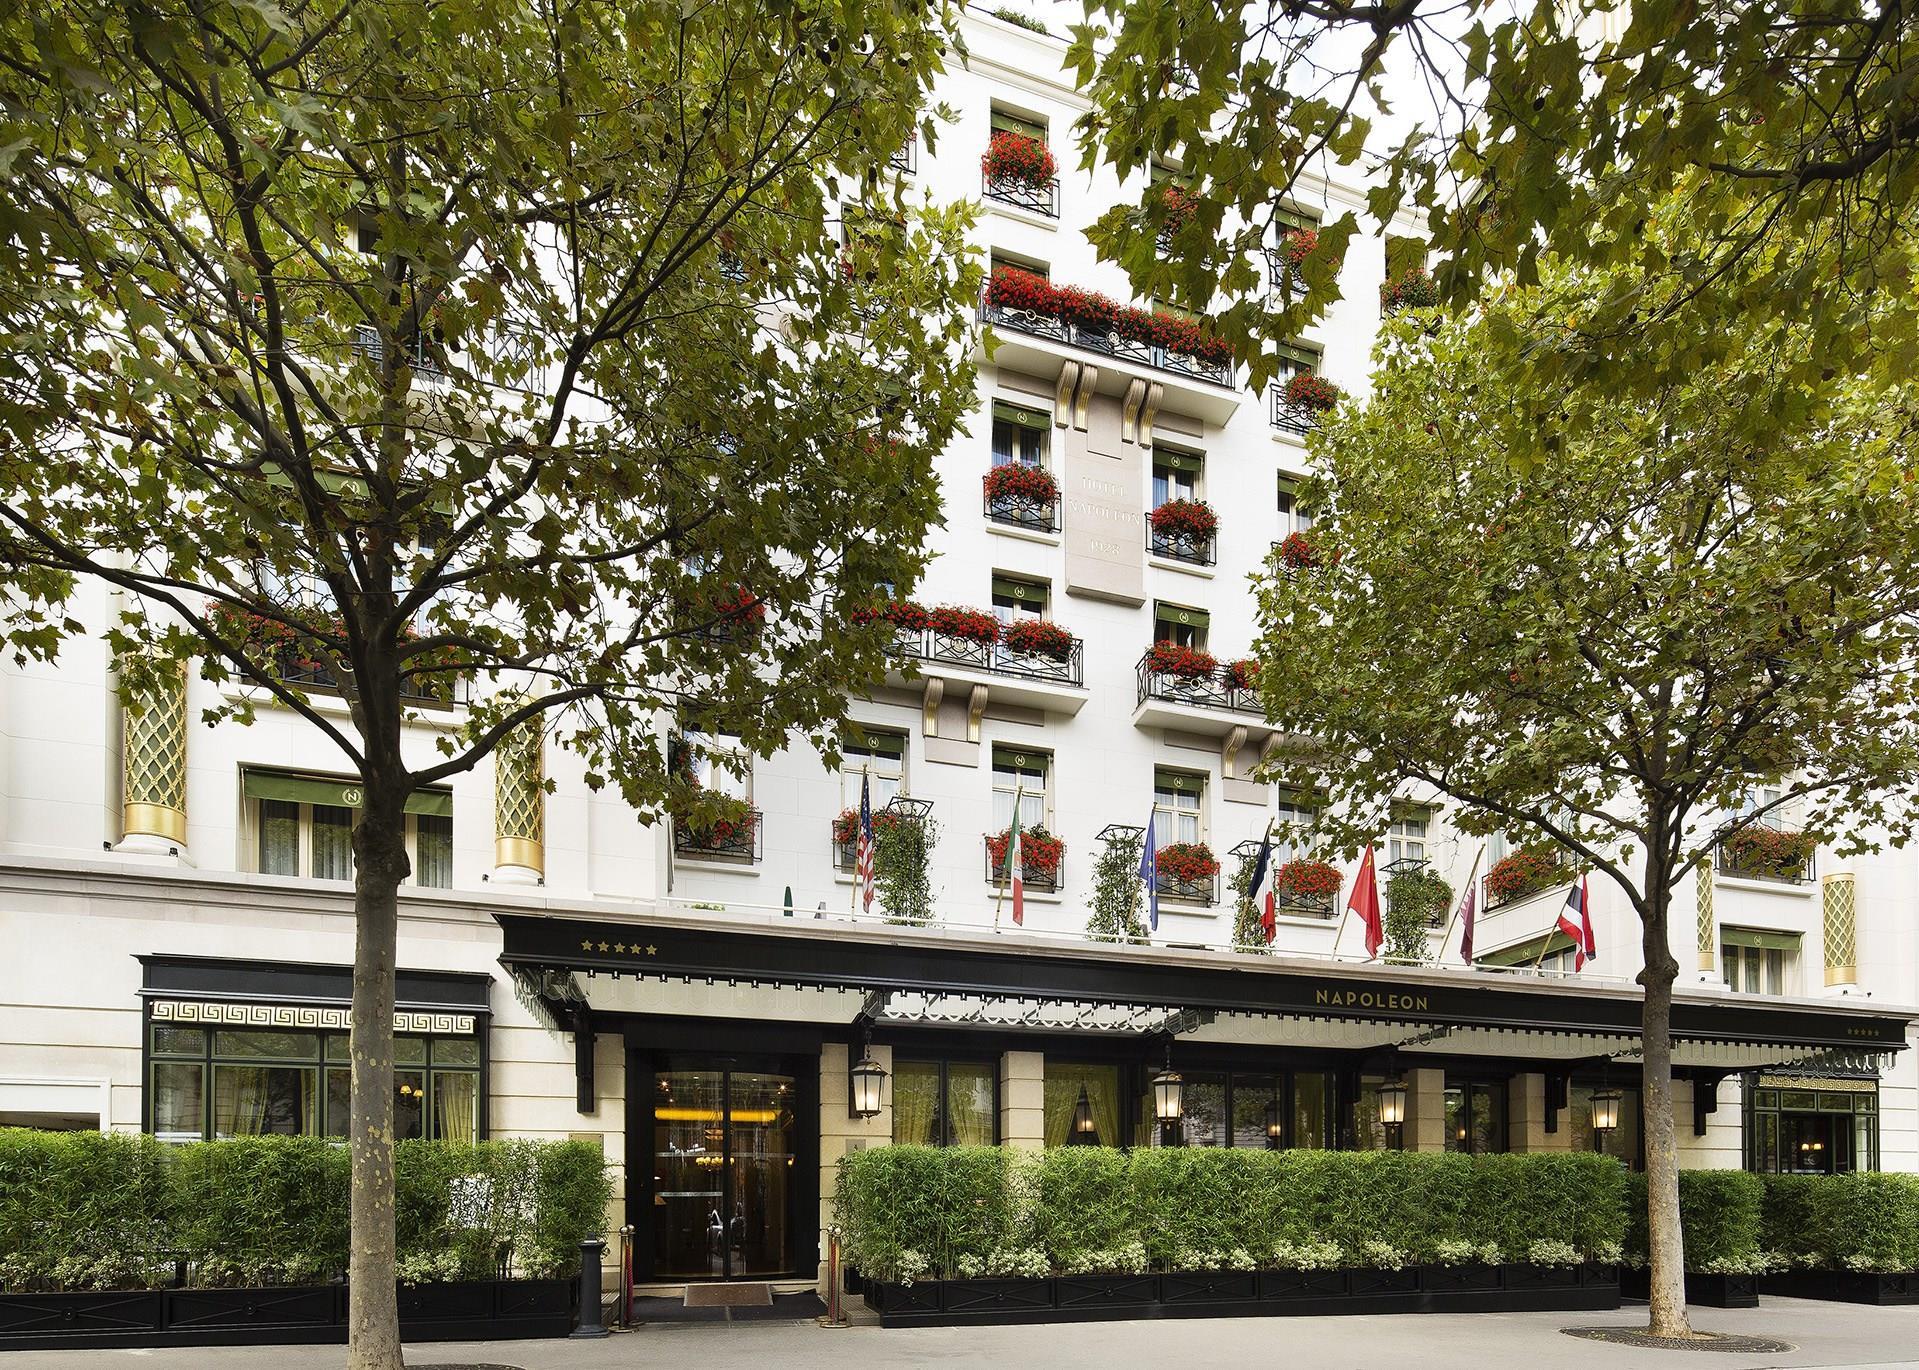 Hotel Napoleon in Paris, FR